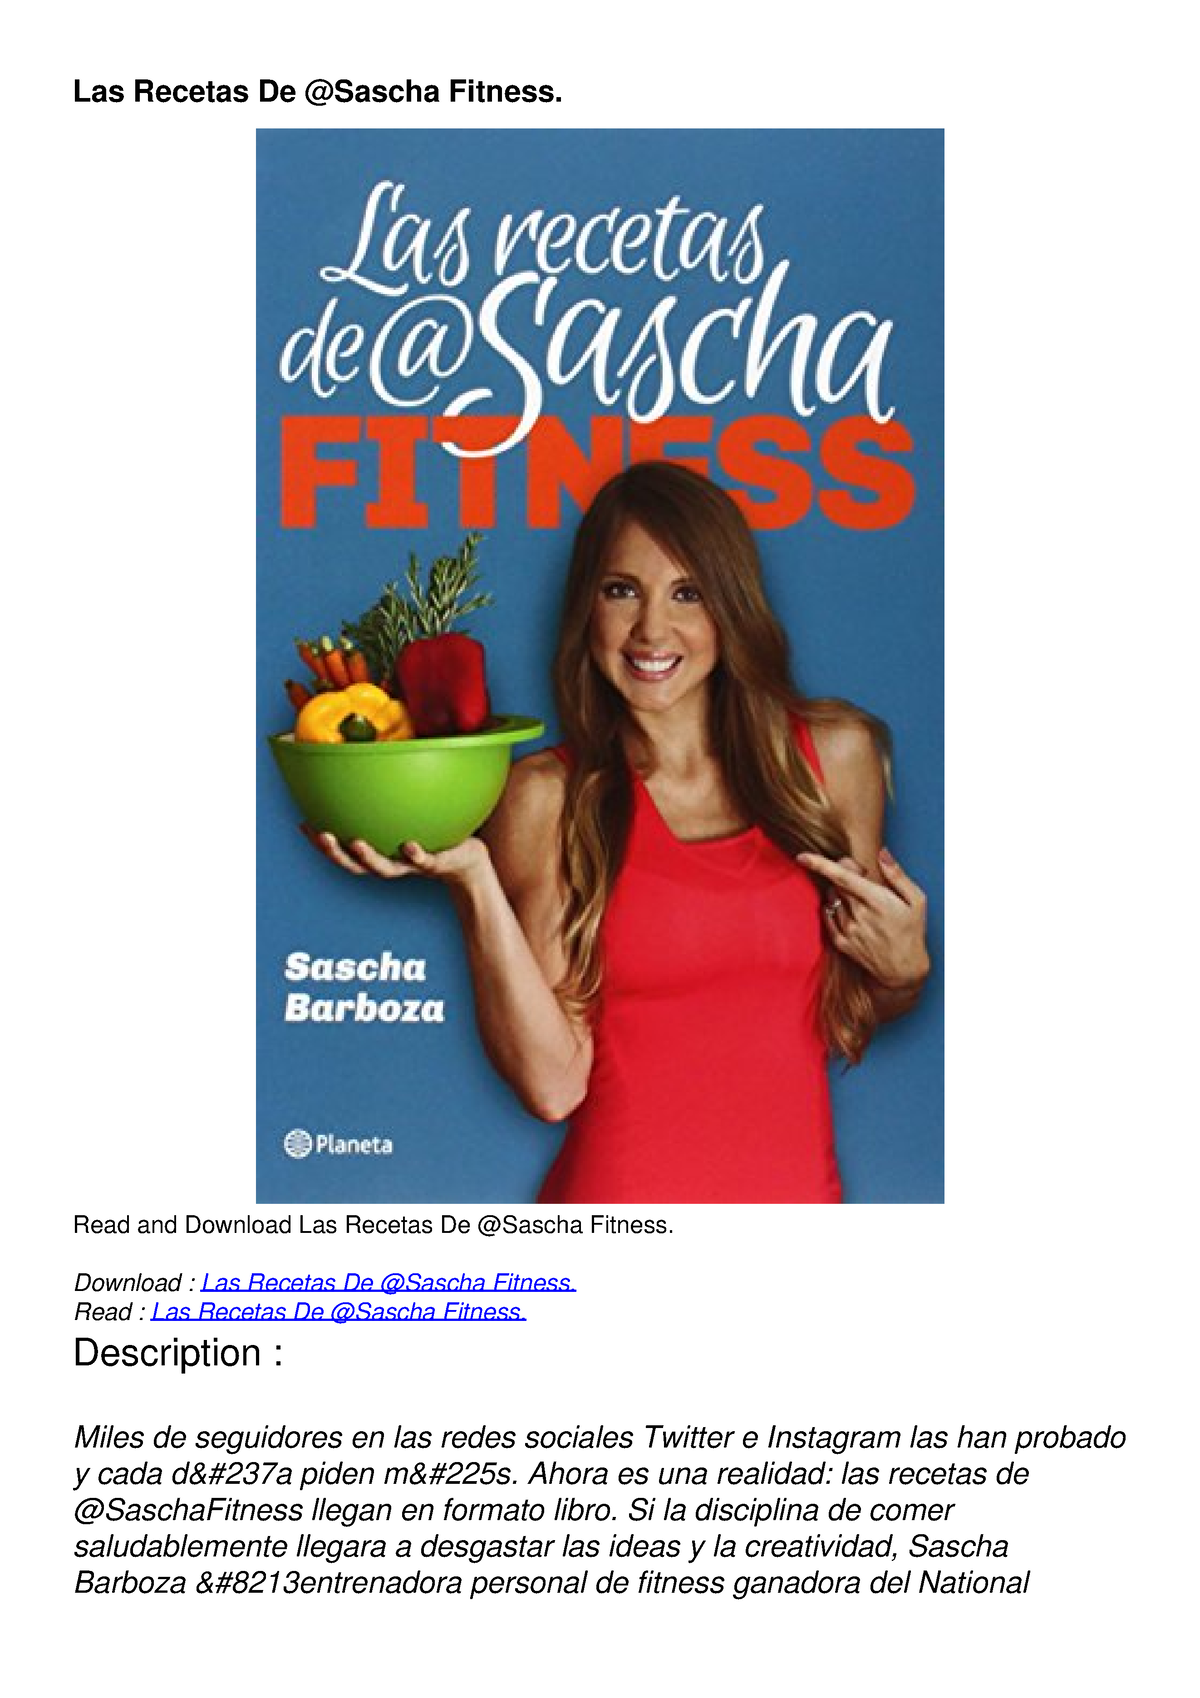 Las recetas de @Sascha Fitness by Sascha Barboza